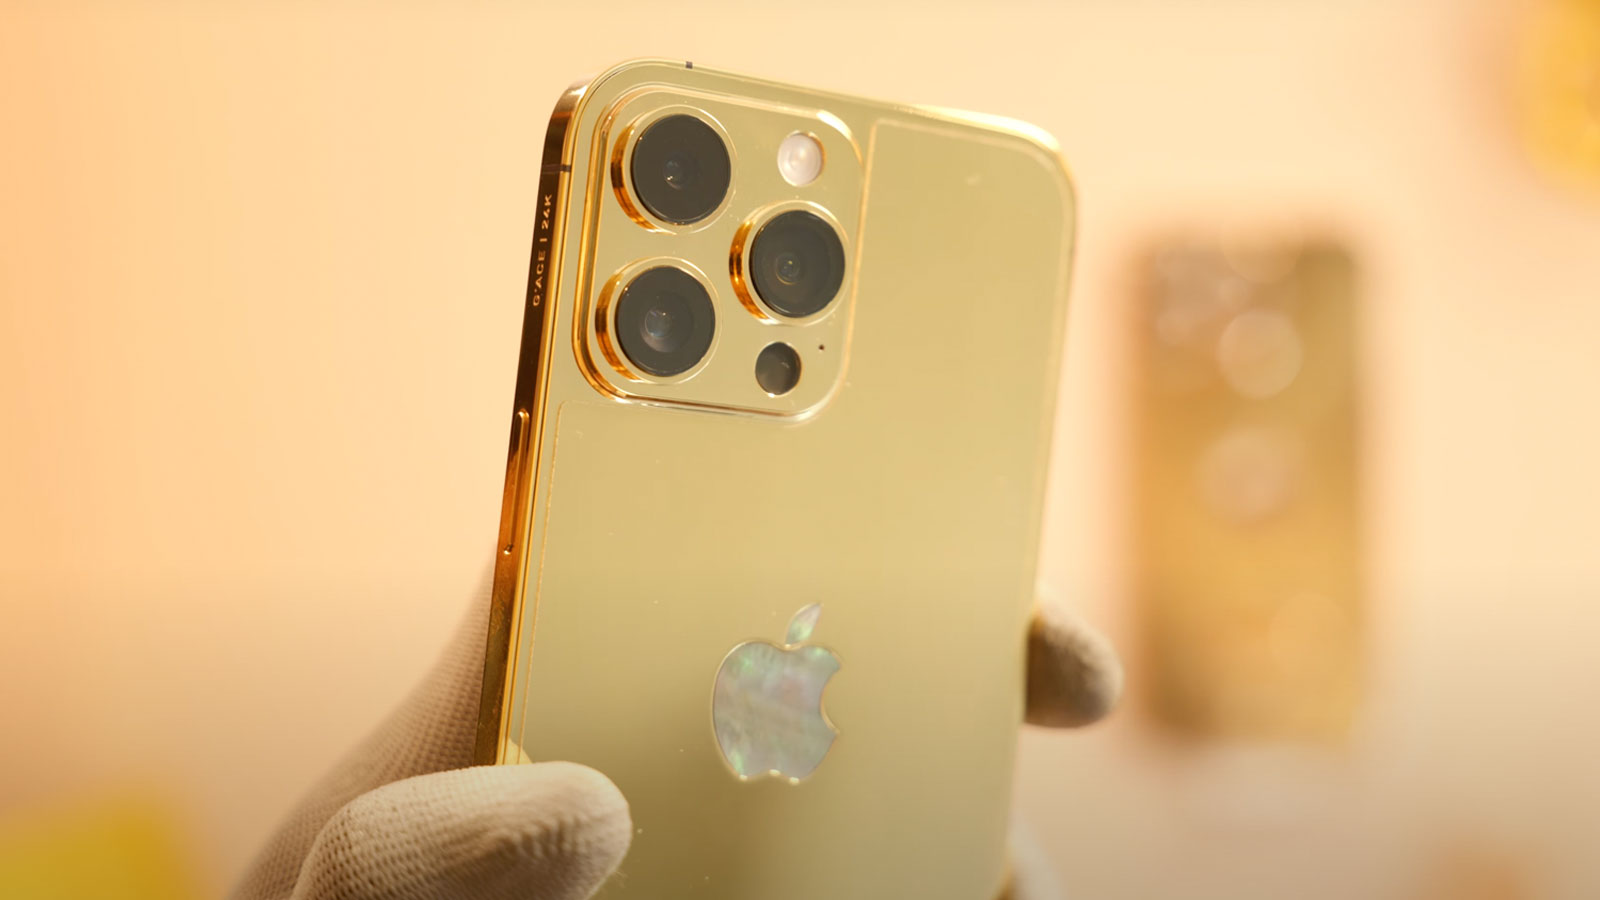 Hãy cùng thưởng ngoạn hình nền iPhone 14 Pro Max màu vàng tuyệt đẹp, đậm chất sang trọng và đẳng cấp. Với màu sắc rực rỡ, hình ảnh rõ nét và độ phân giải cao, chắc chắn sẽ khiến bạn phải say mê. Không chỉ là một hình nền đơn thuần, mà đó còn là một tuyệt tác nghệ thuật đầy tinh tế và ấn tượng mà bạn khó có thể bỏ qua.